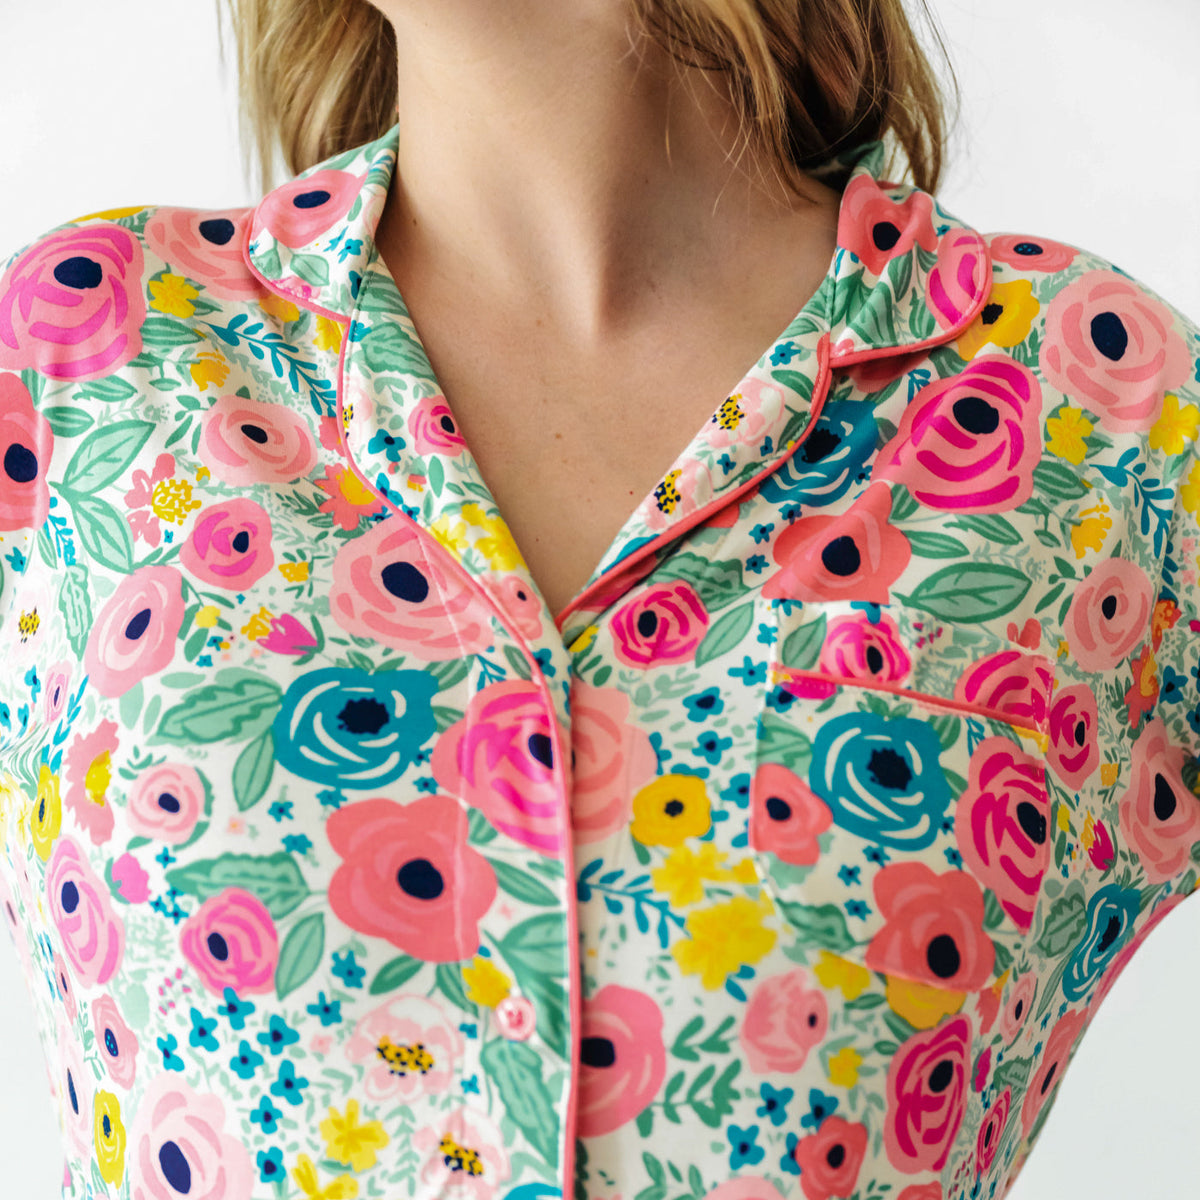 Summer Women Floral Print Long Sleeve Button Down Shirt Tops